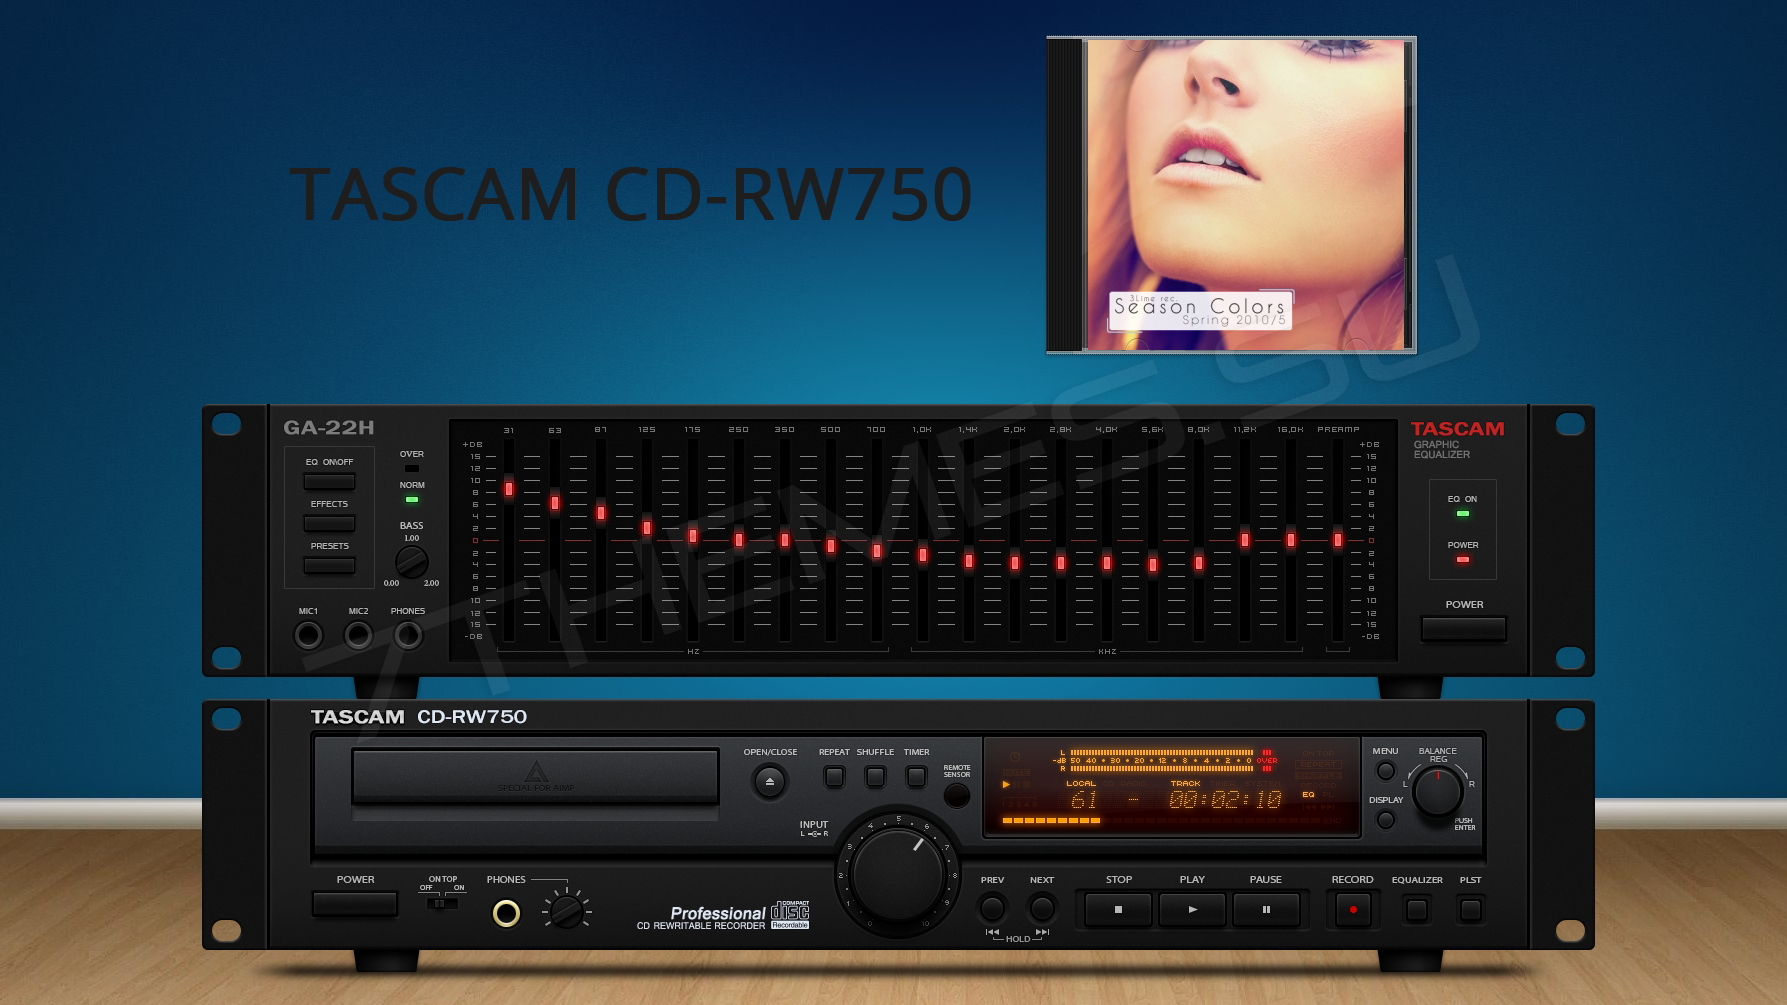 Скин "TASCAM CD-RW750" для Aimp